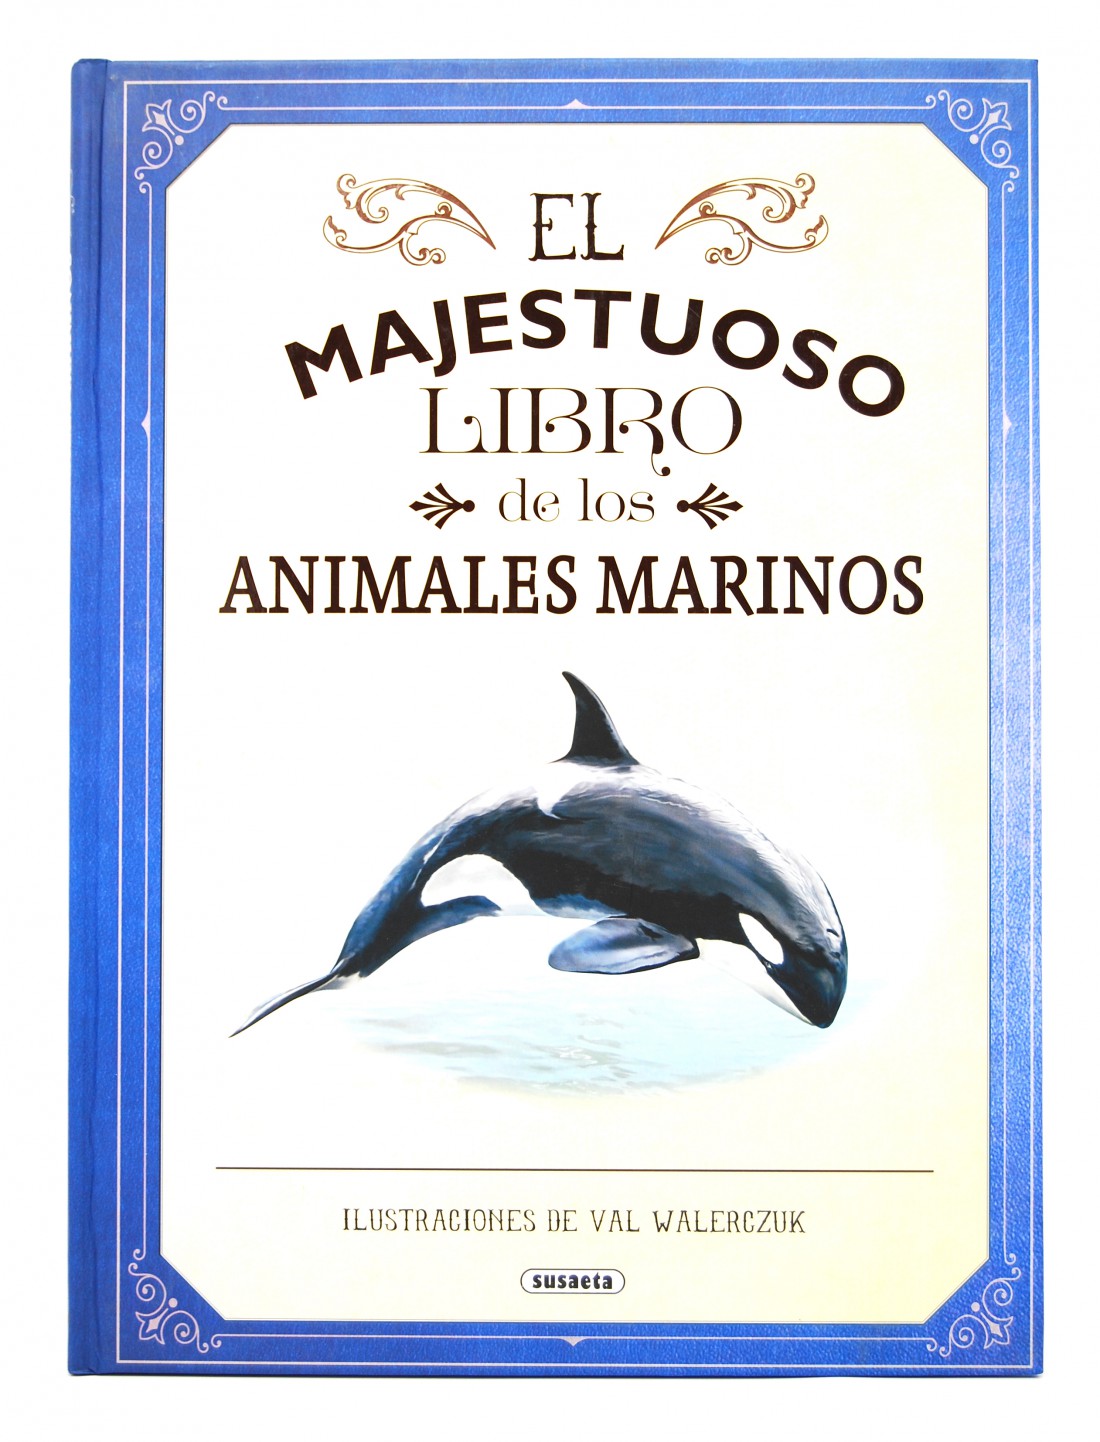 El majestuoso libro de los animales marinos